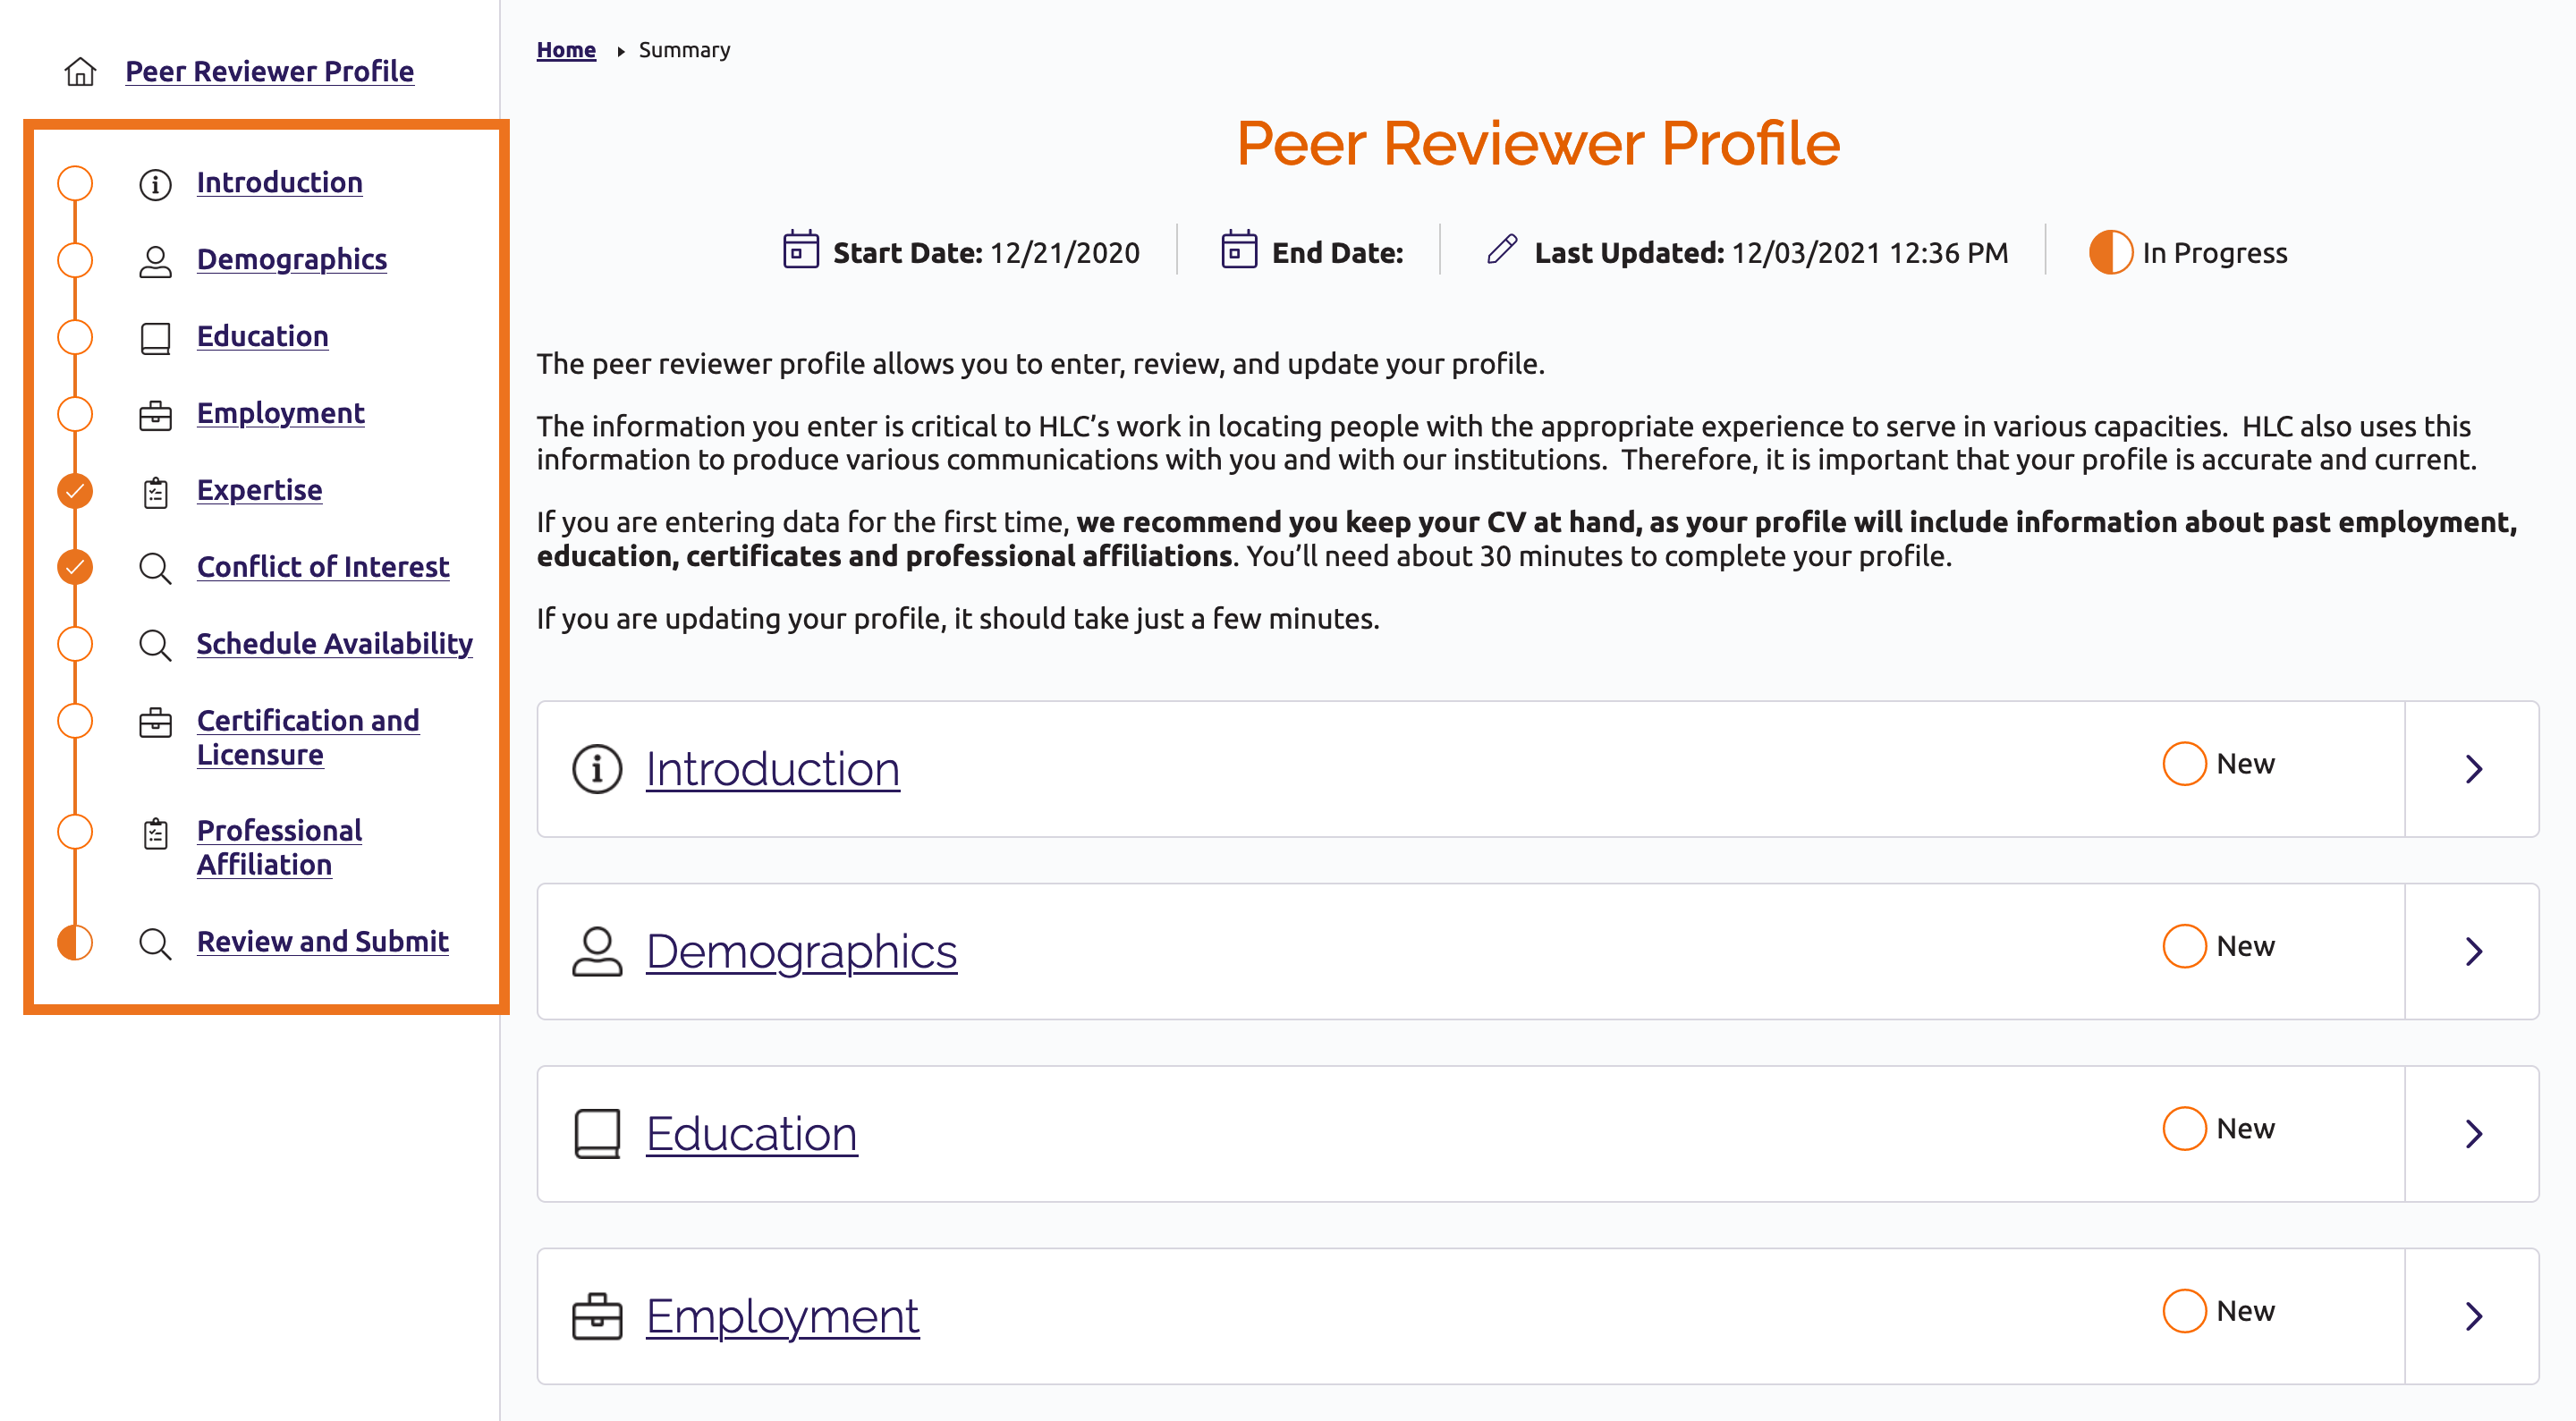 Peer Reviewer Profile main screen